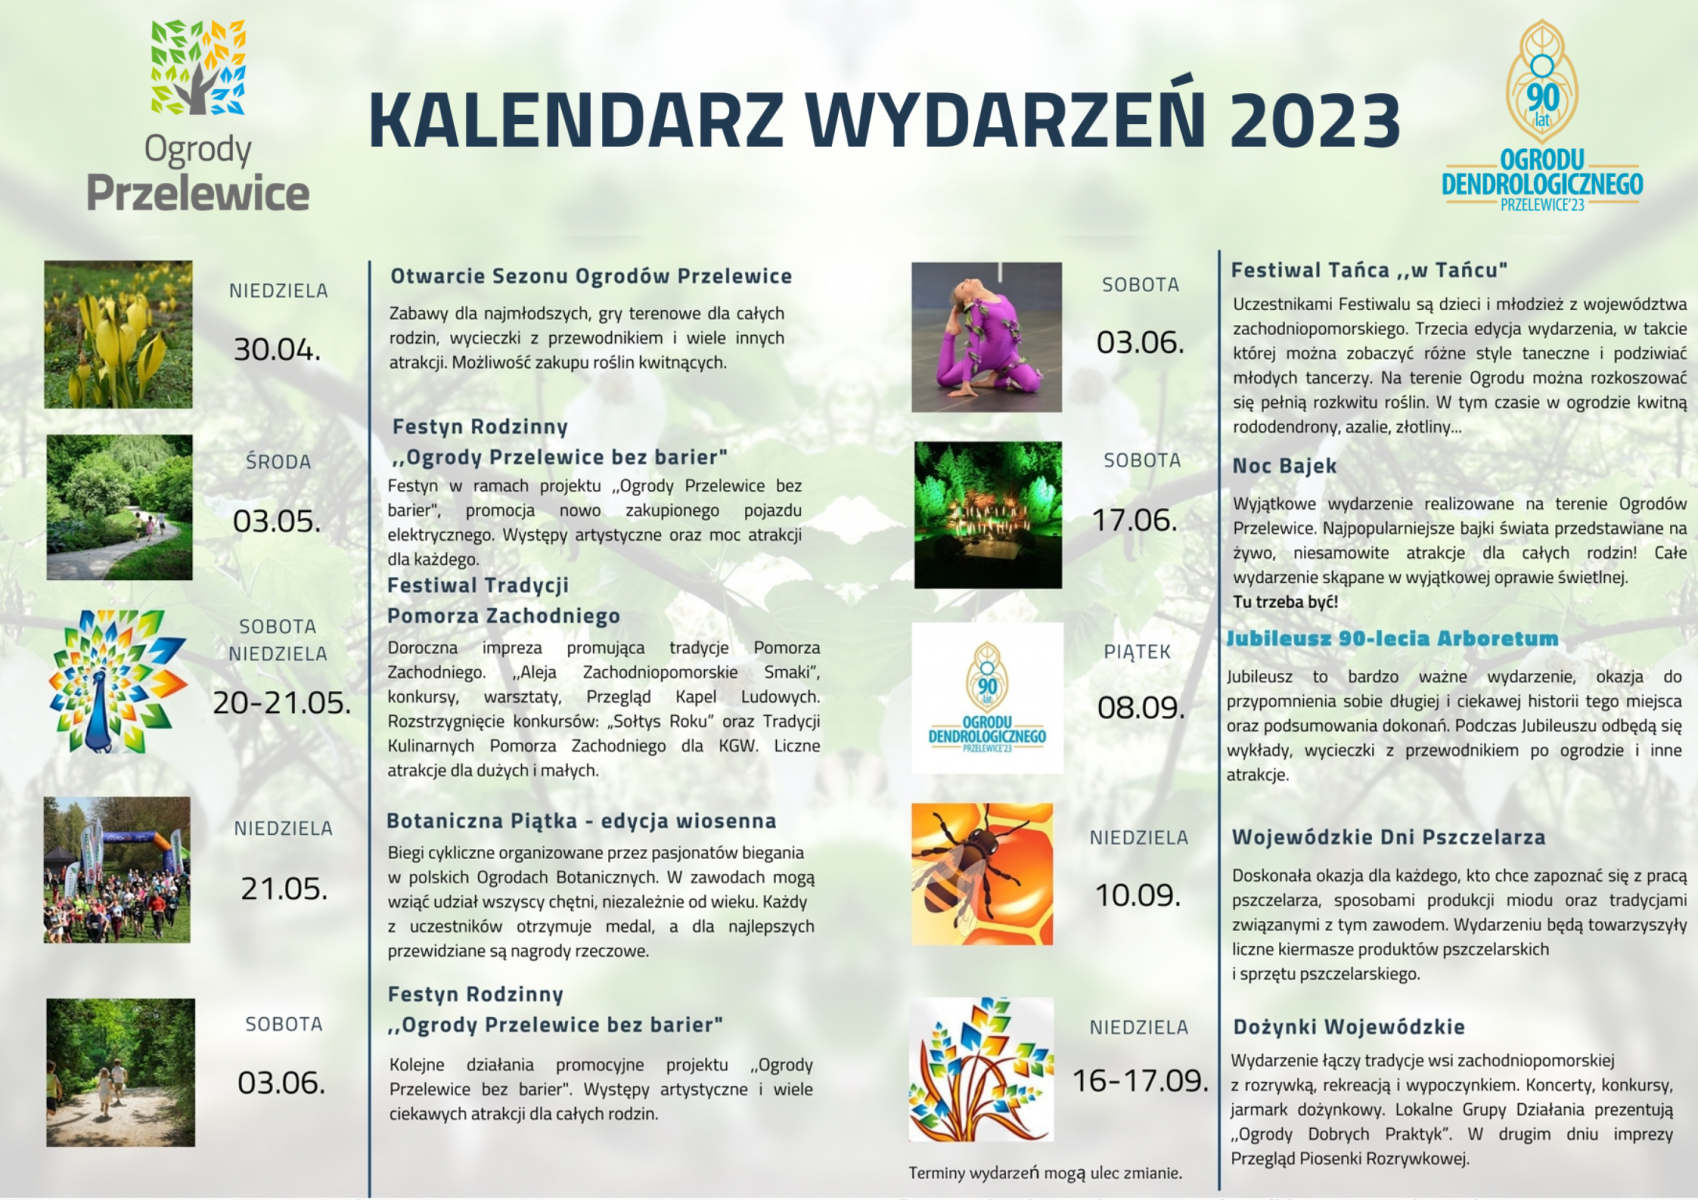 Kalendarz wydarzeń 2023 w Ogrodach Przelewice